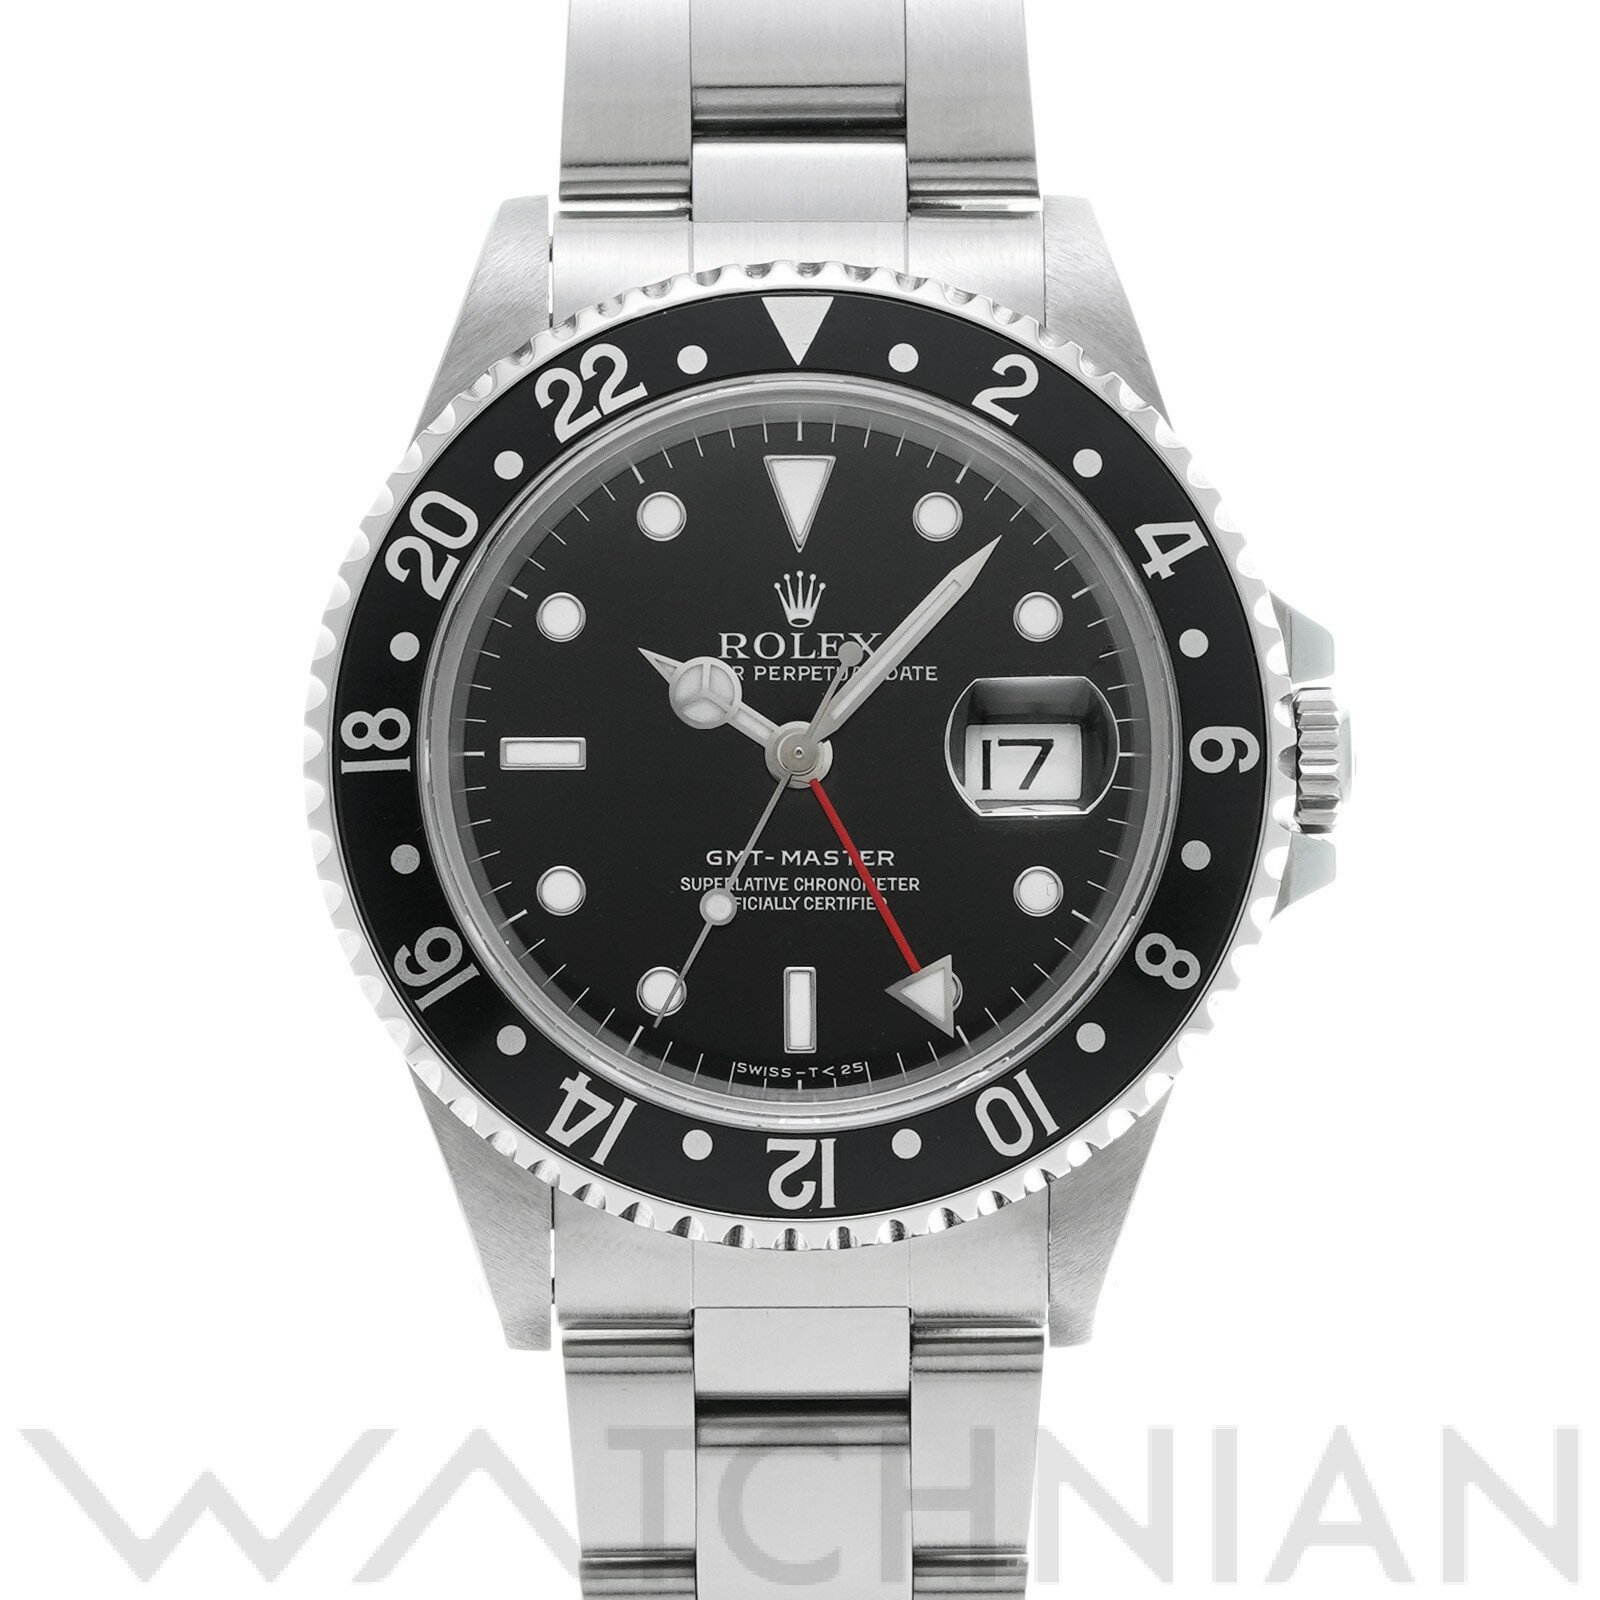 【中古】 ロレックス ROLEX GMTマスター 16700 U番(1997年頃製造) ブラック メンズ 腕時計